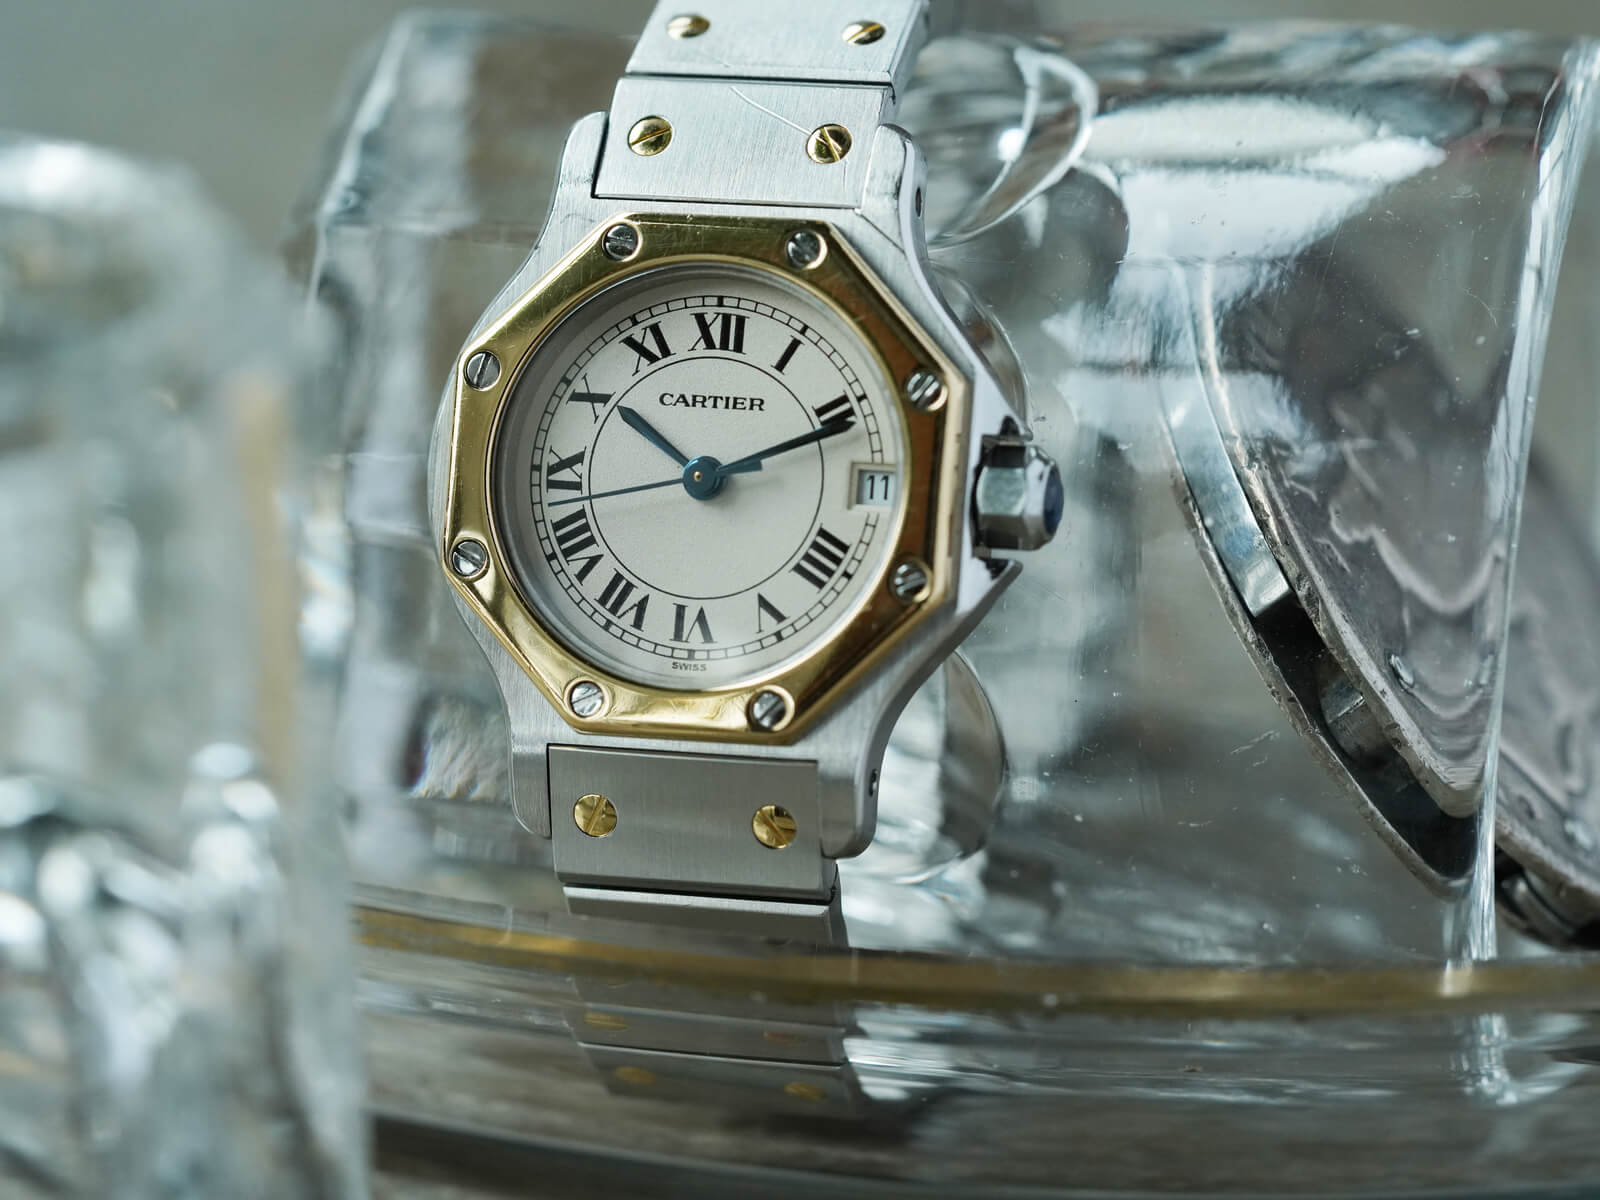 Cartier(カルティエ) 腕時計 サントスオクタゴンSM レディース アイボリー-